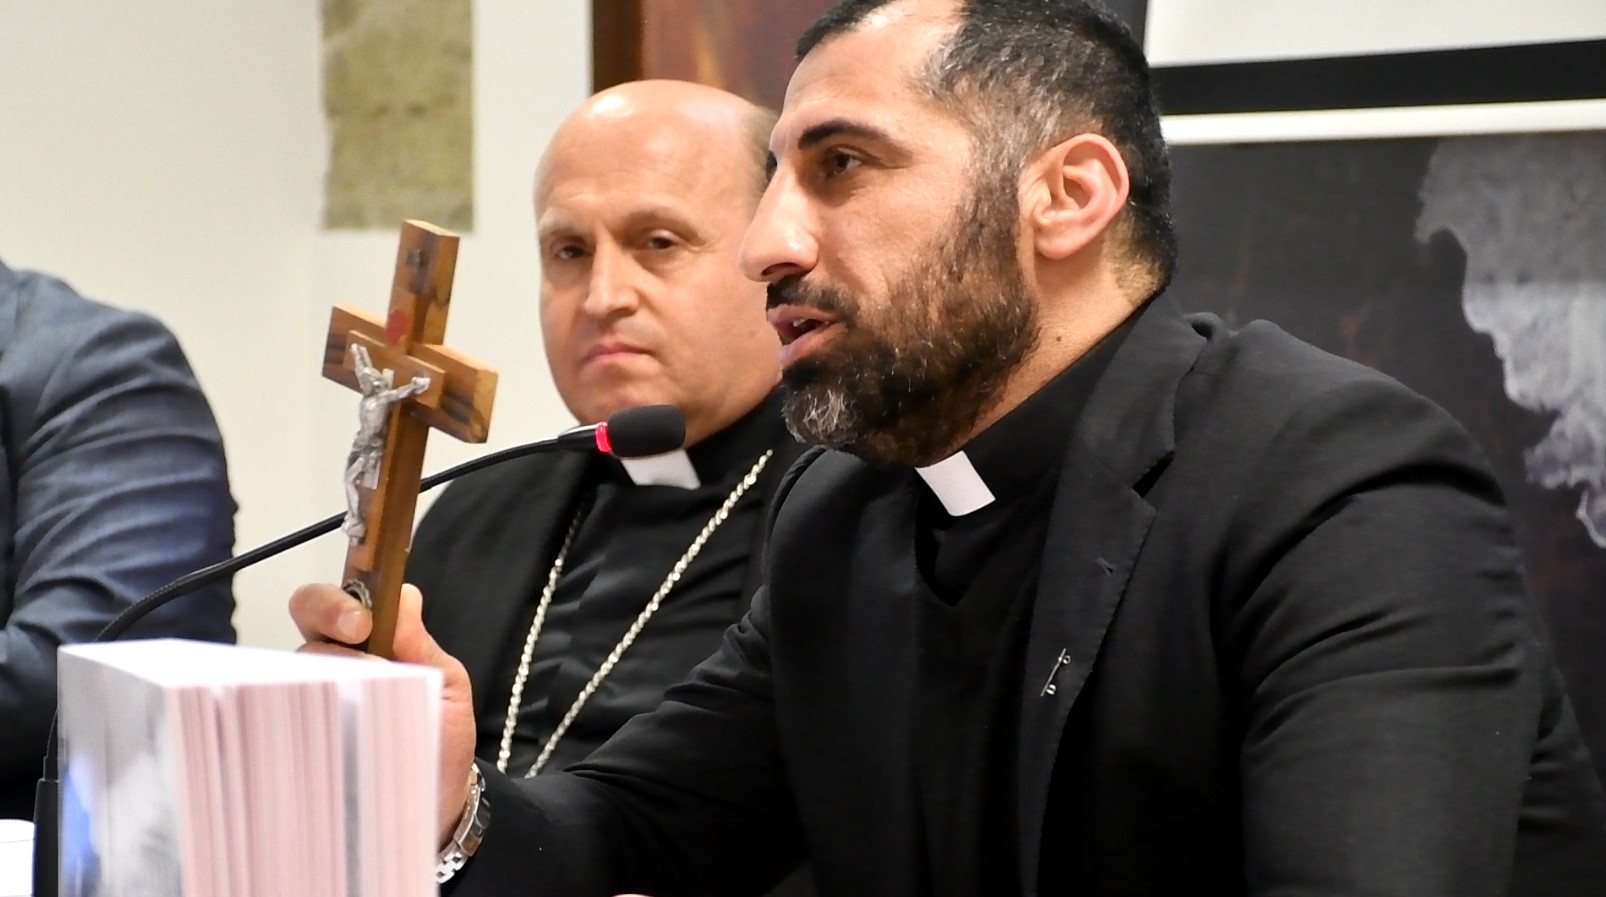 ILR 2023: “El cristiano, o es un mártir o no será nada” – Archidiócesis de Santiago de Compostela @DioceseSantiago